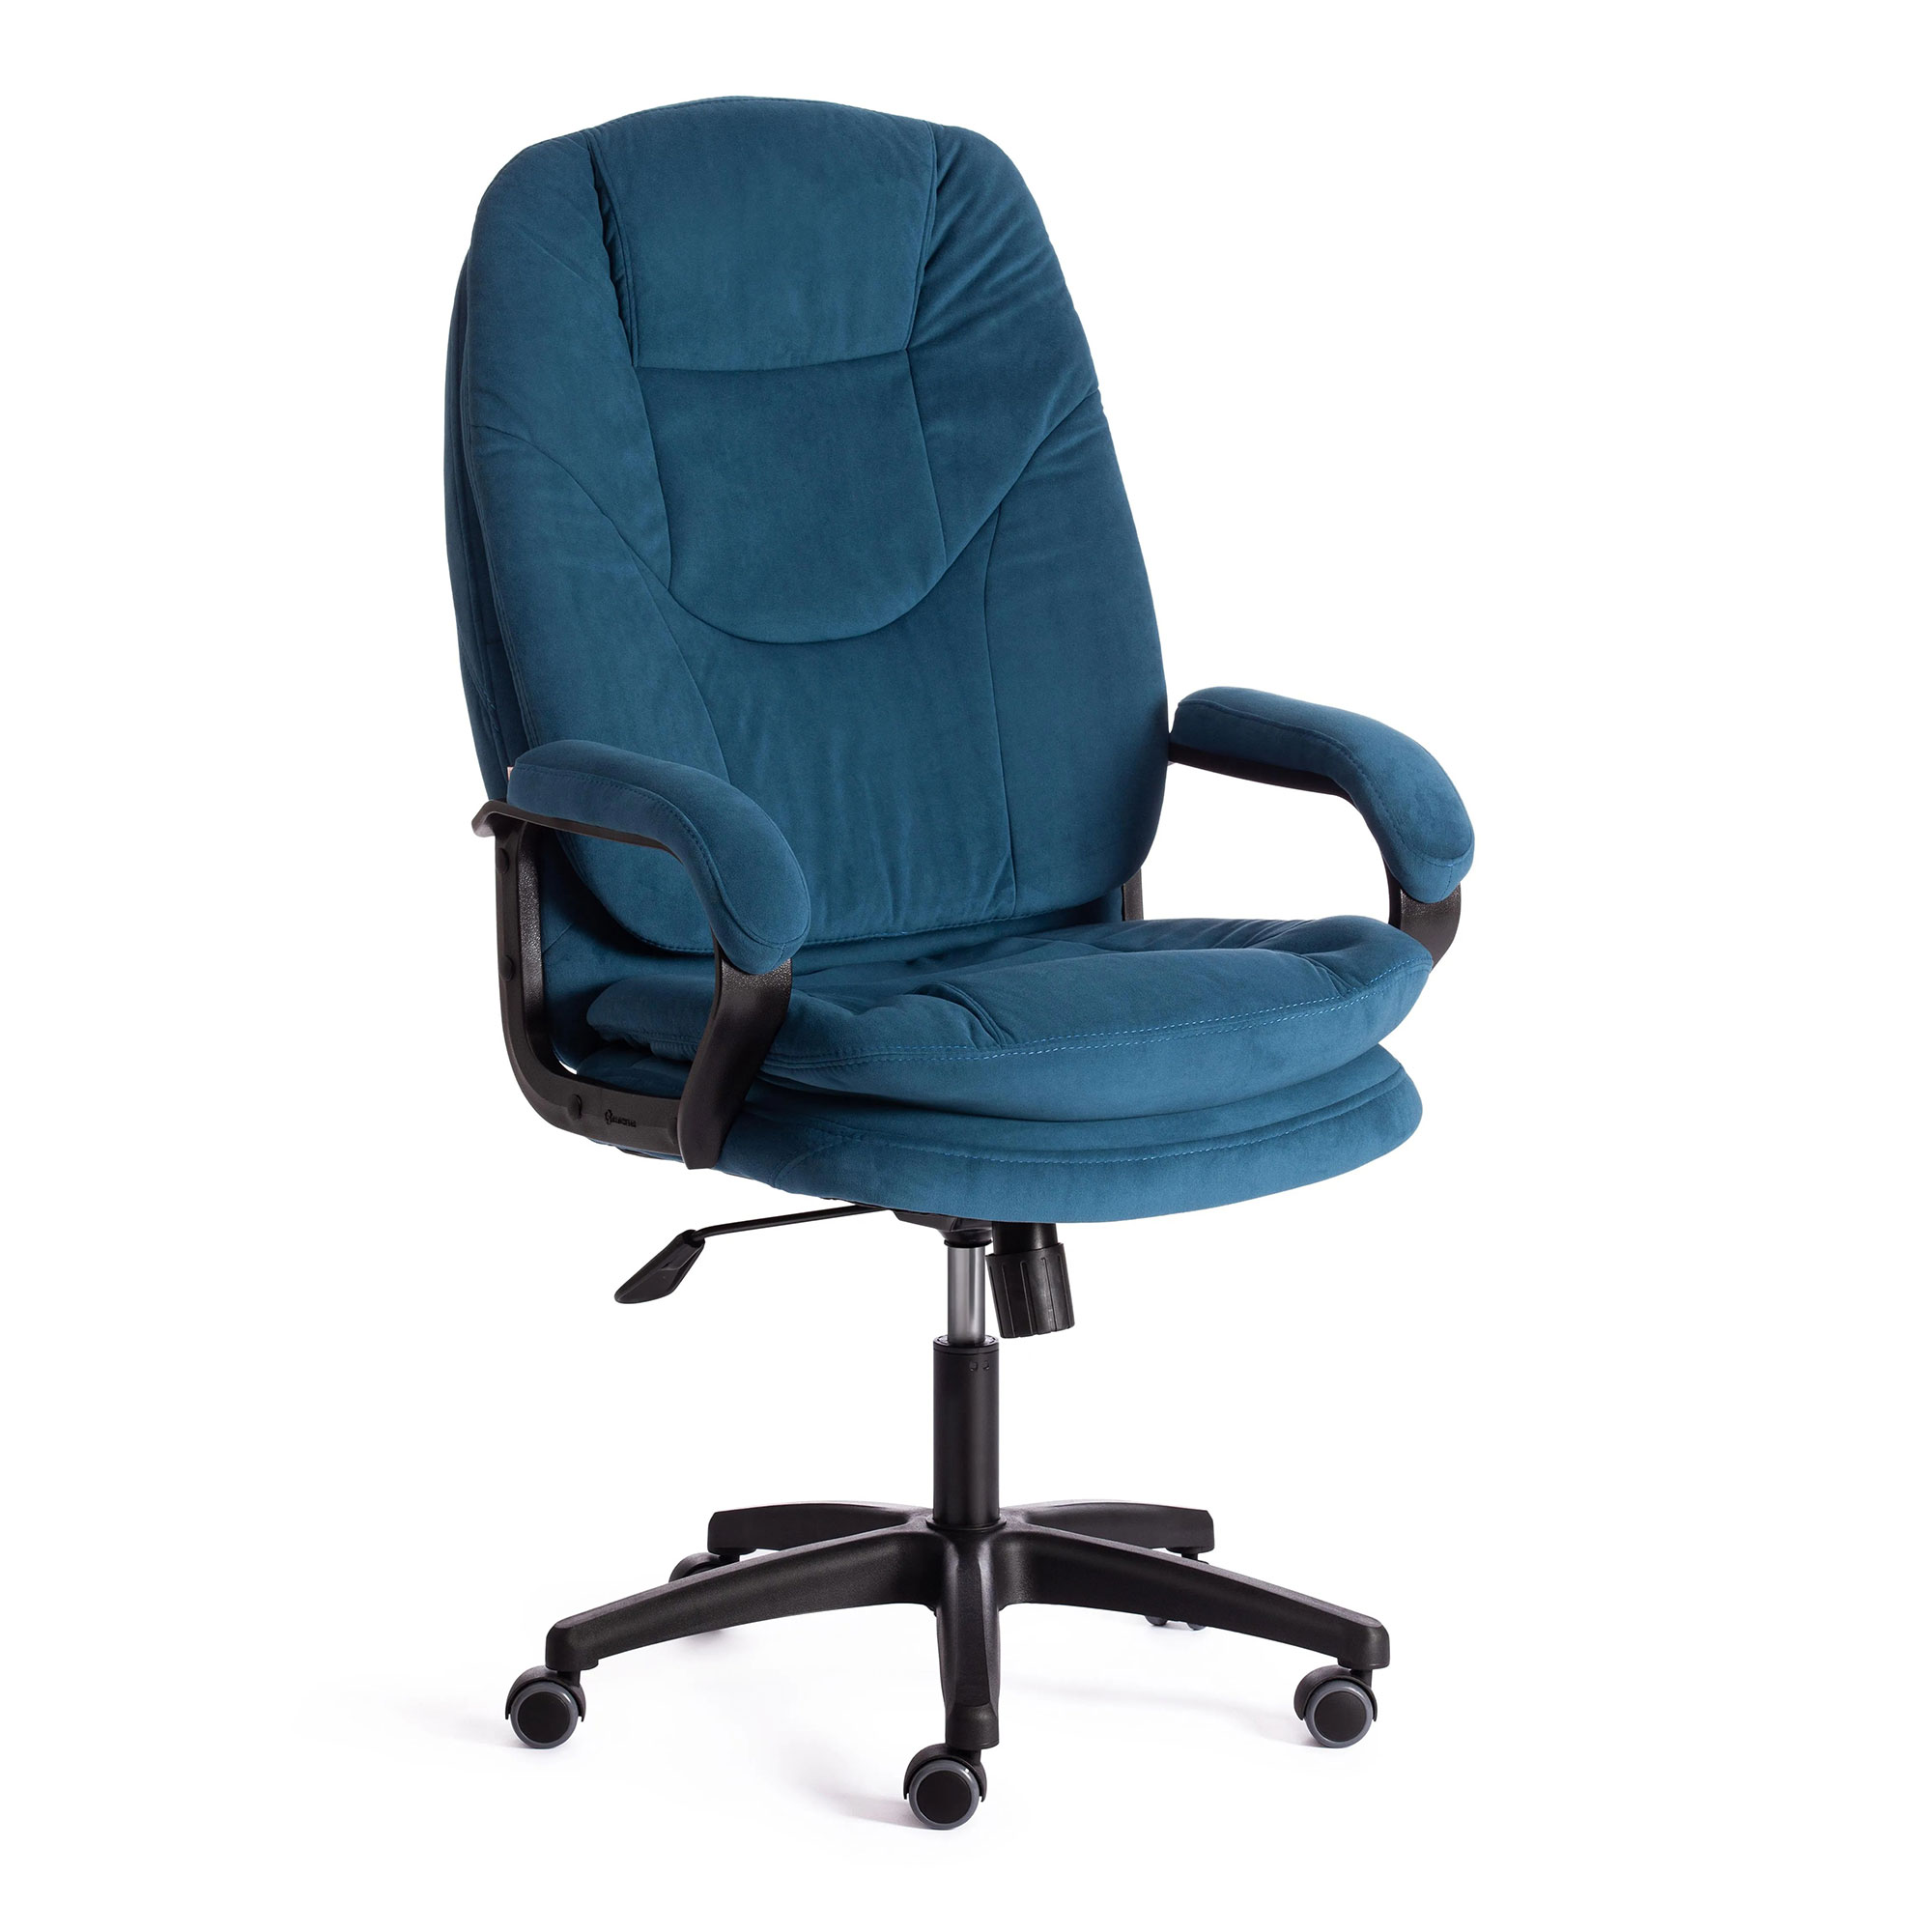 Компьютерное кресло TC Comfort синее 66х46х133 см (19387) компьютерное кресло tc comfort синее 66х46х133 см 19387